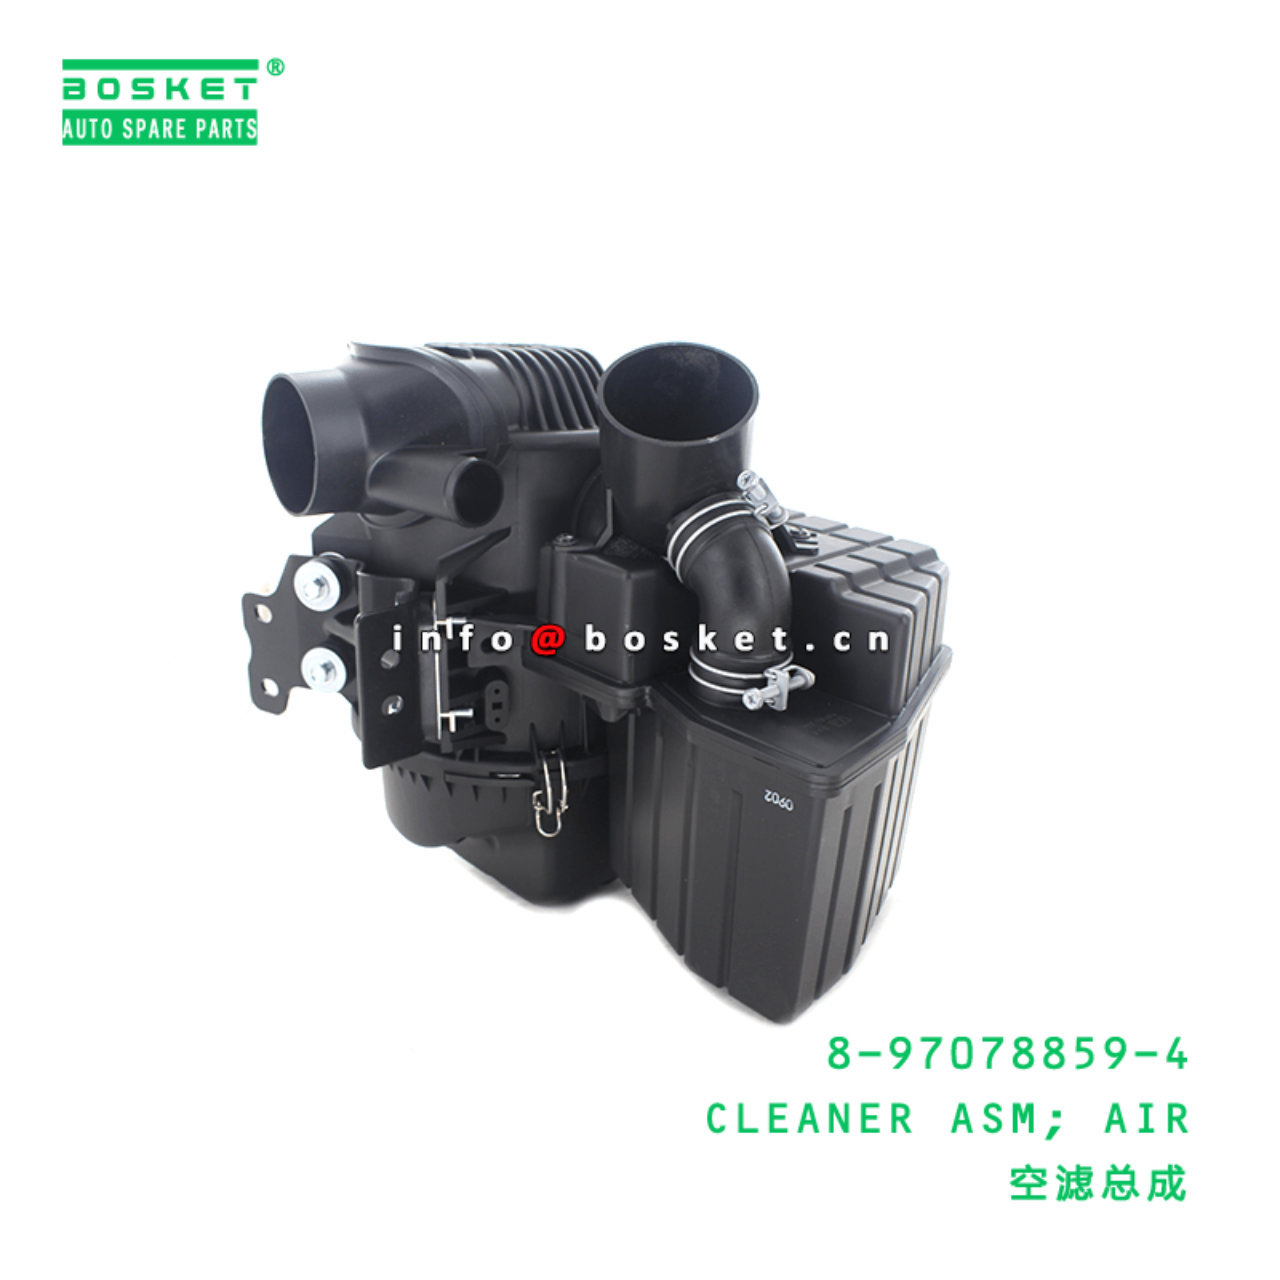 Boîtier filtre à air Isuzu N-Serie NKR85,NLR85,NNR85,NPR85